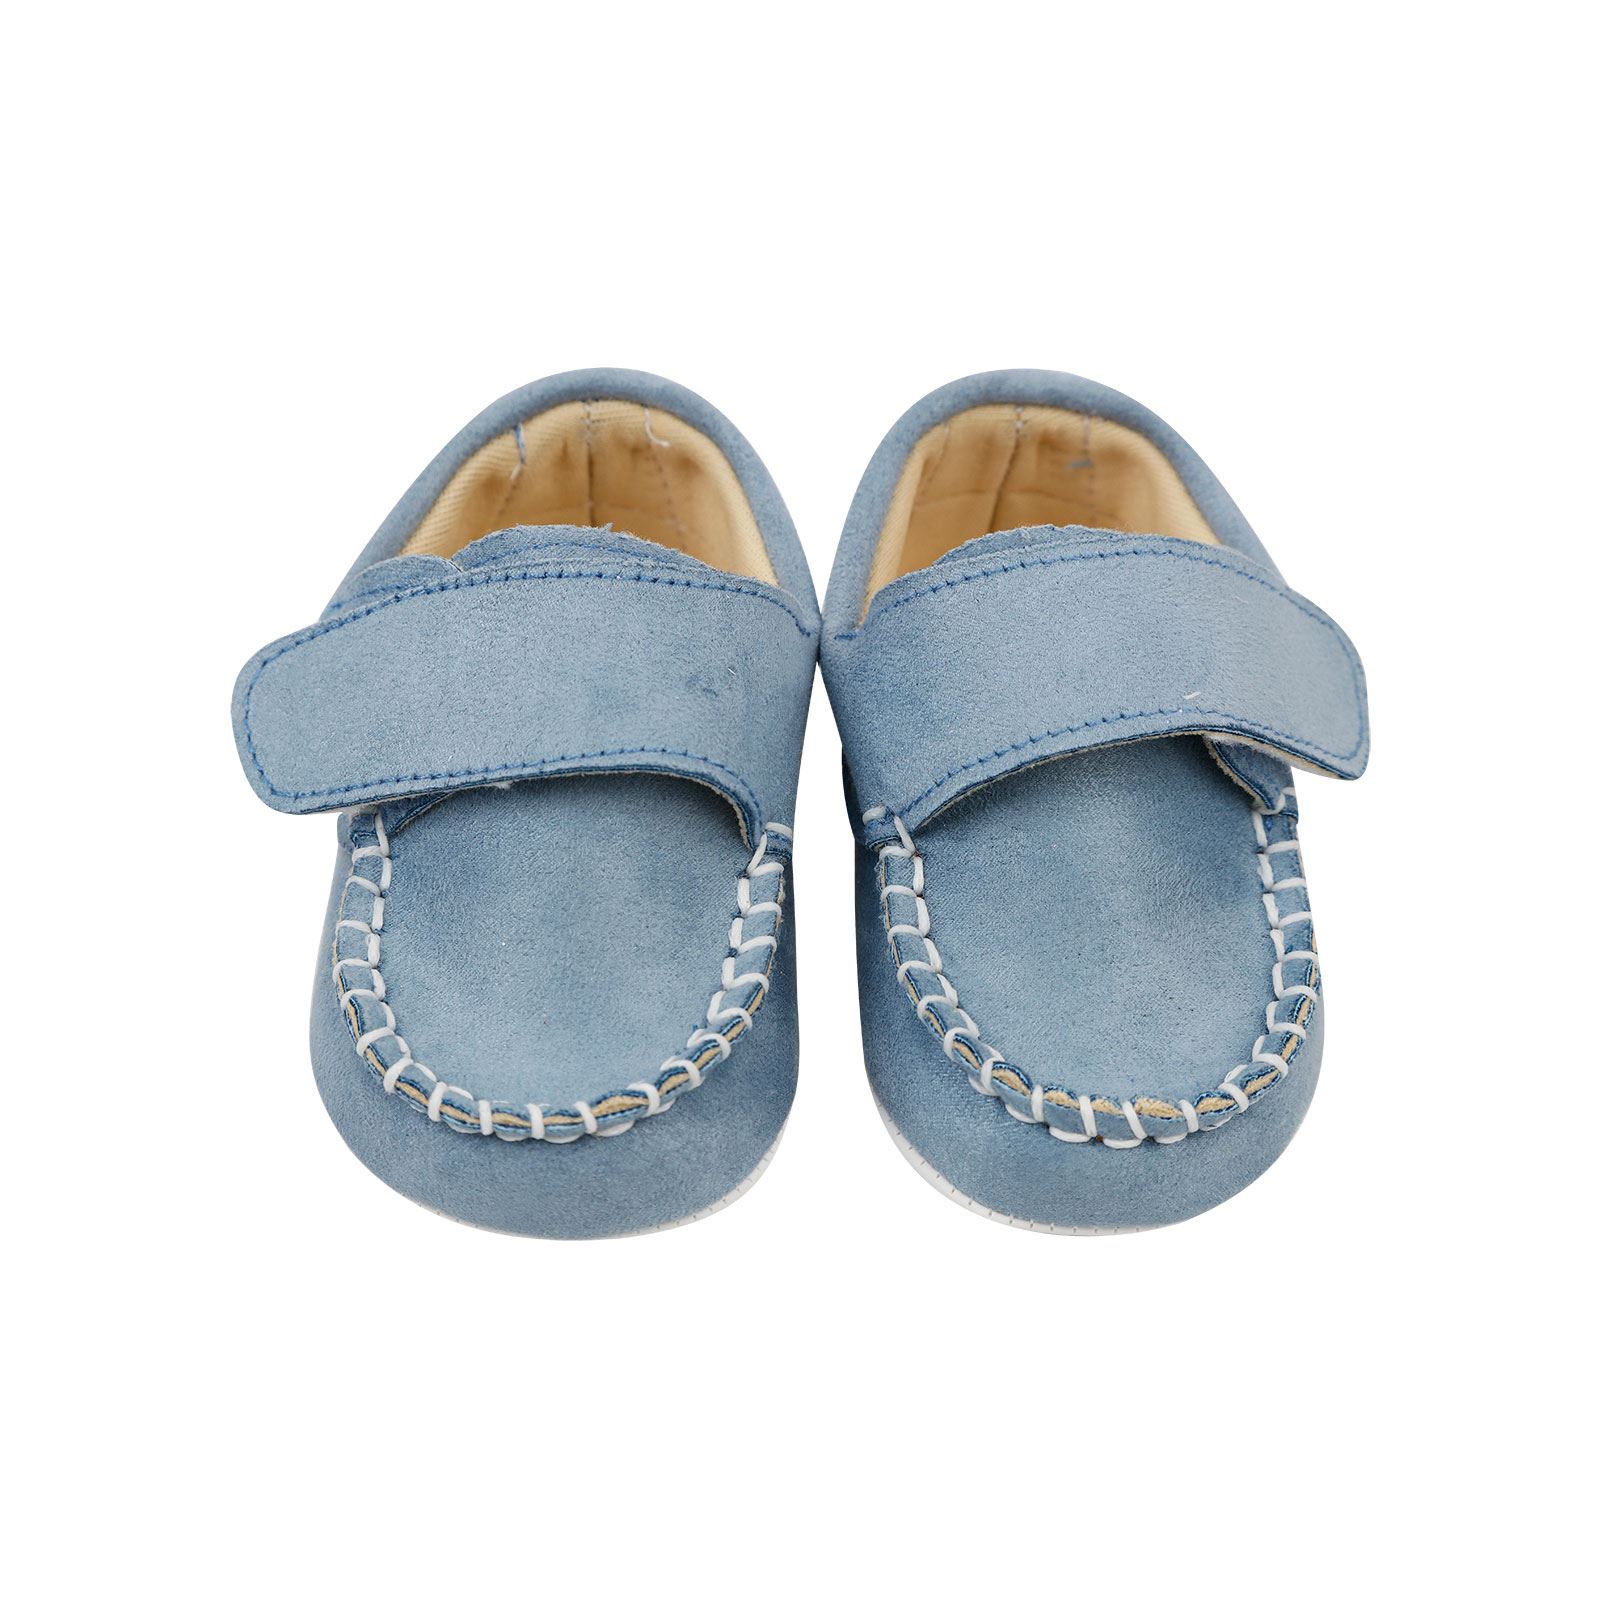 Civil Baby Erkek Bebek Patik Ayakkabı 17-19 Numara Mavi